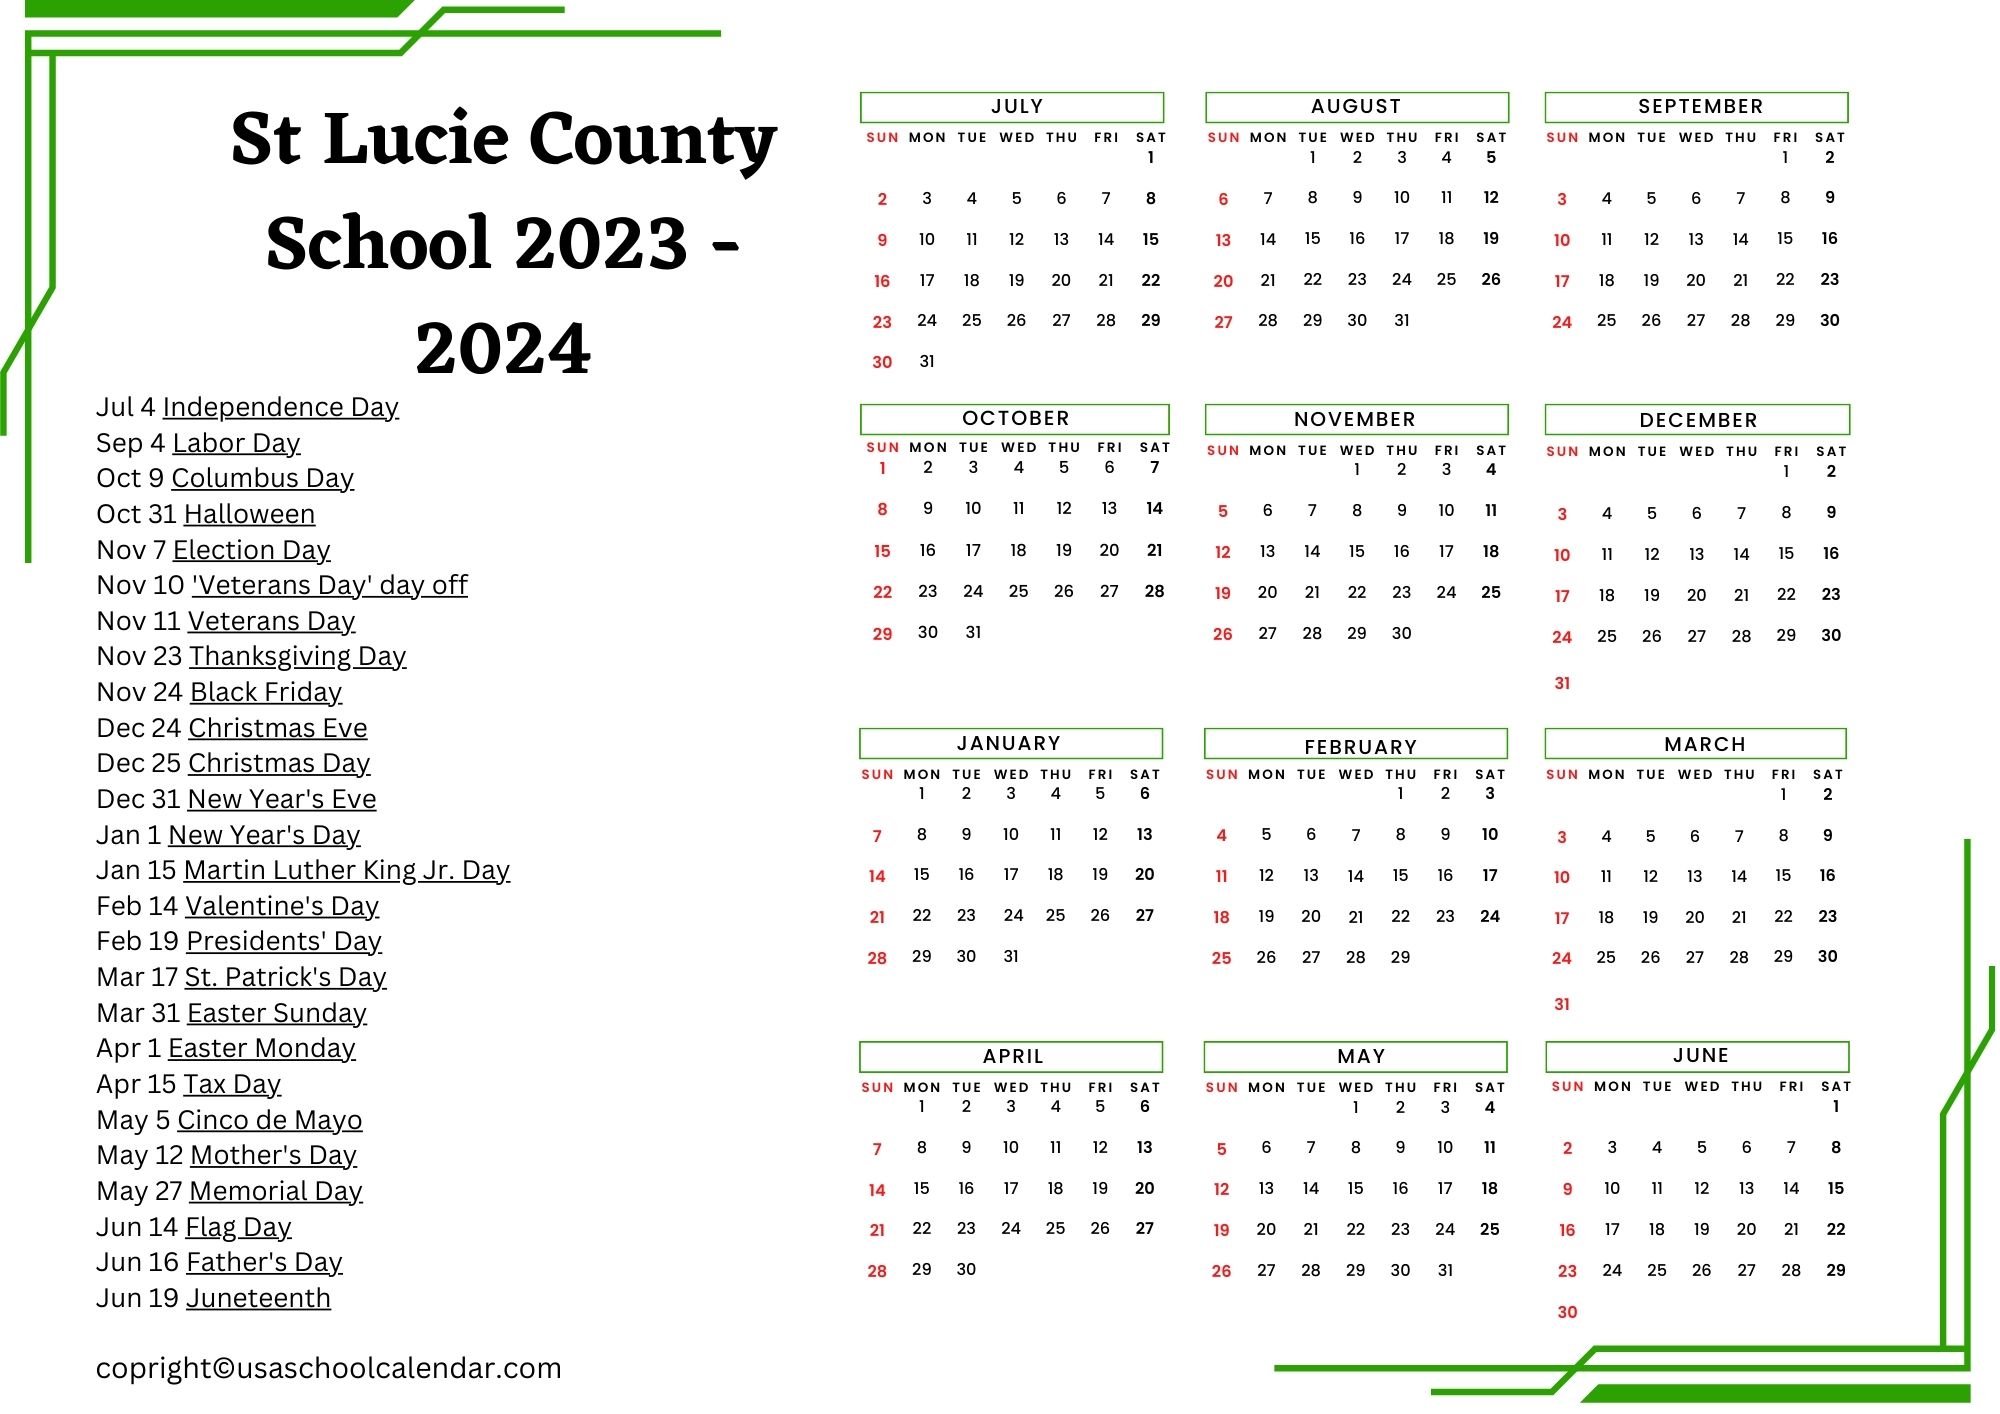 st-lucie-county-school-calendar-holidays-2023-2024